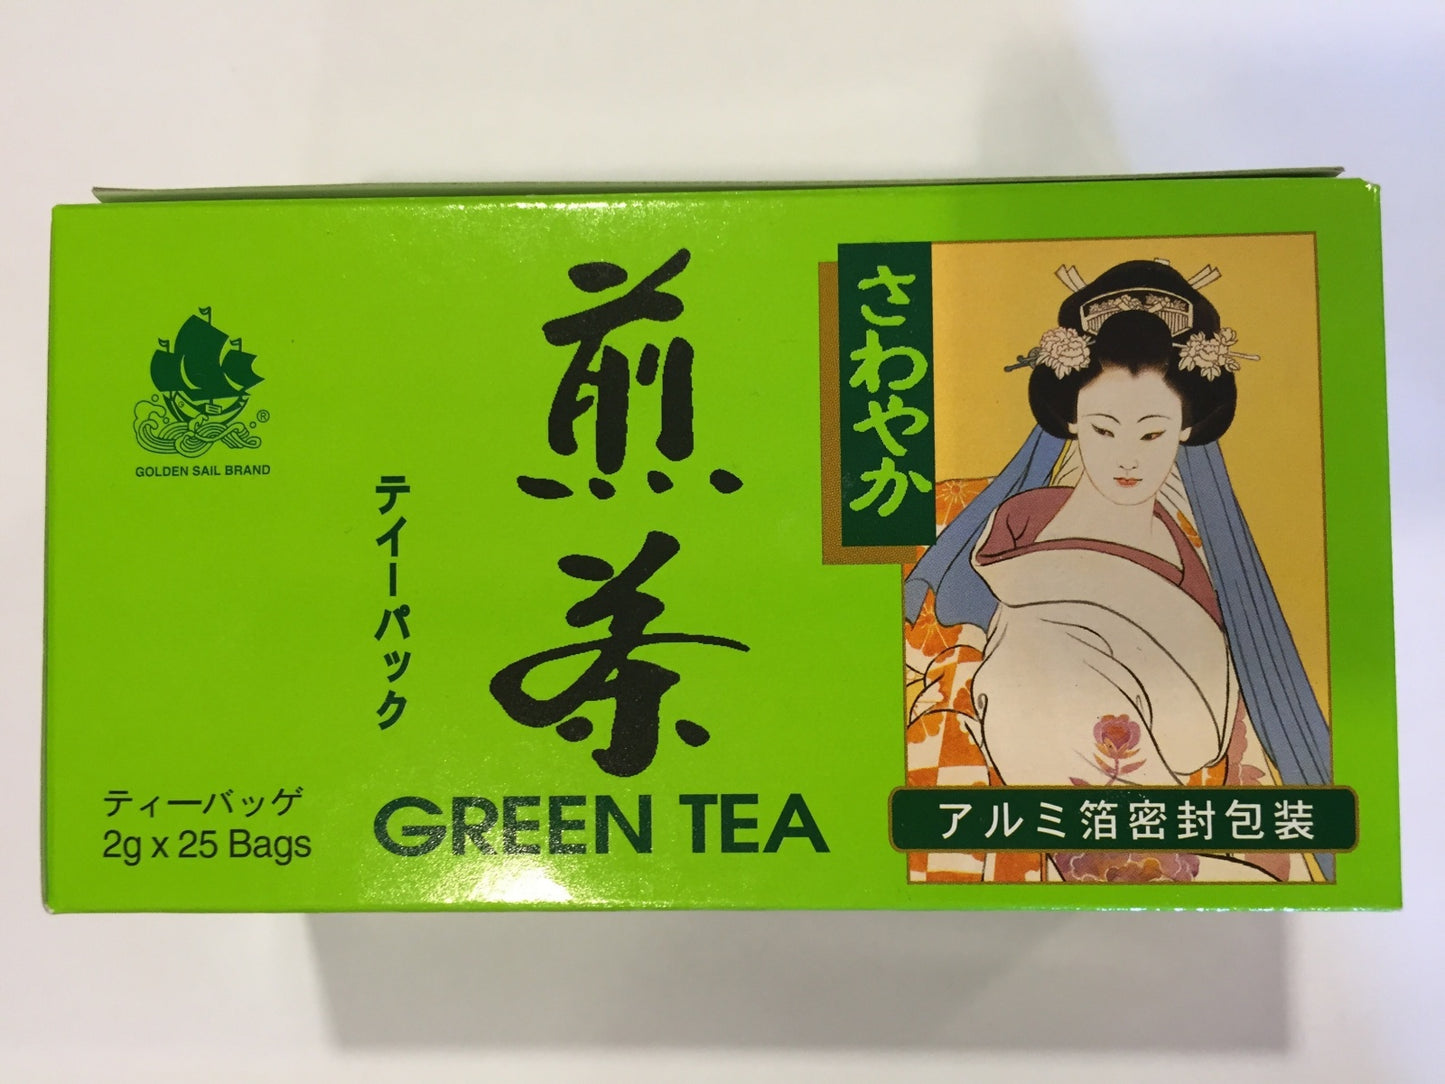 Green Tea Golden Sail